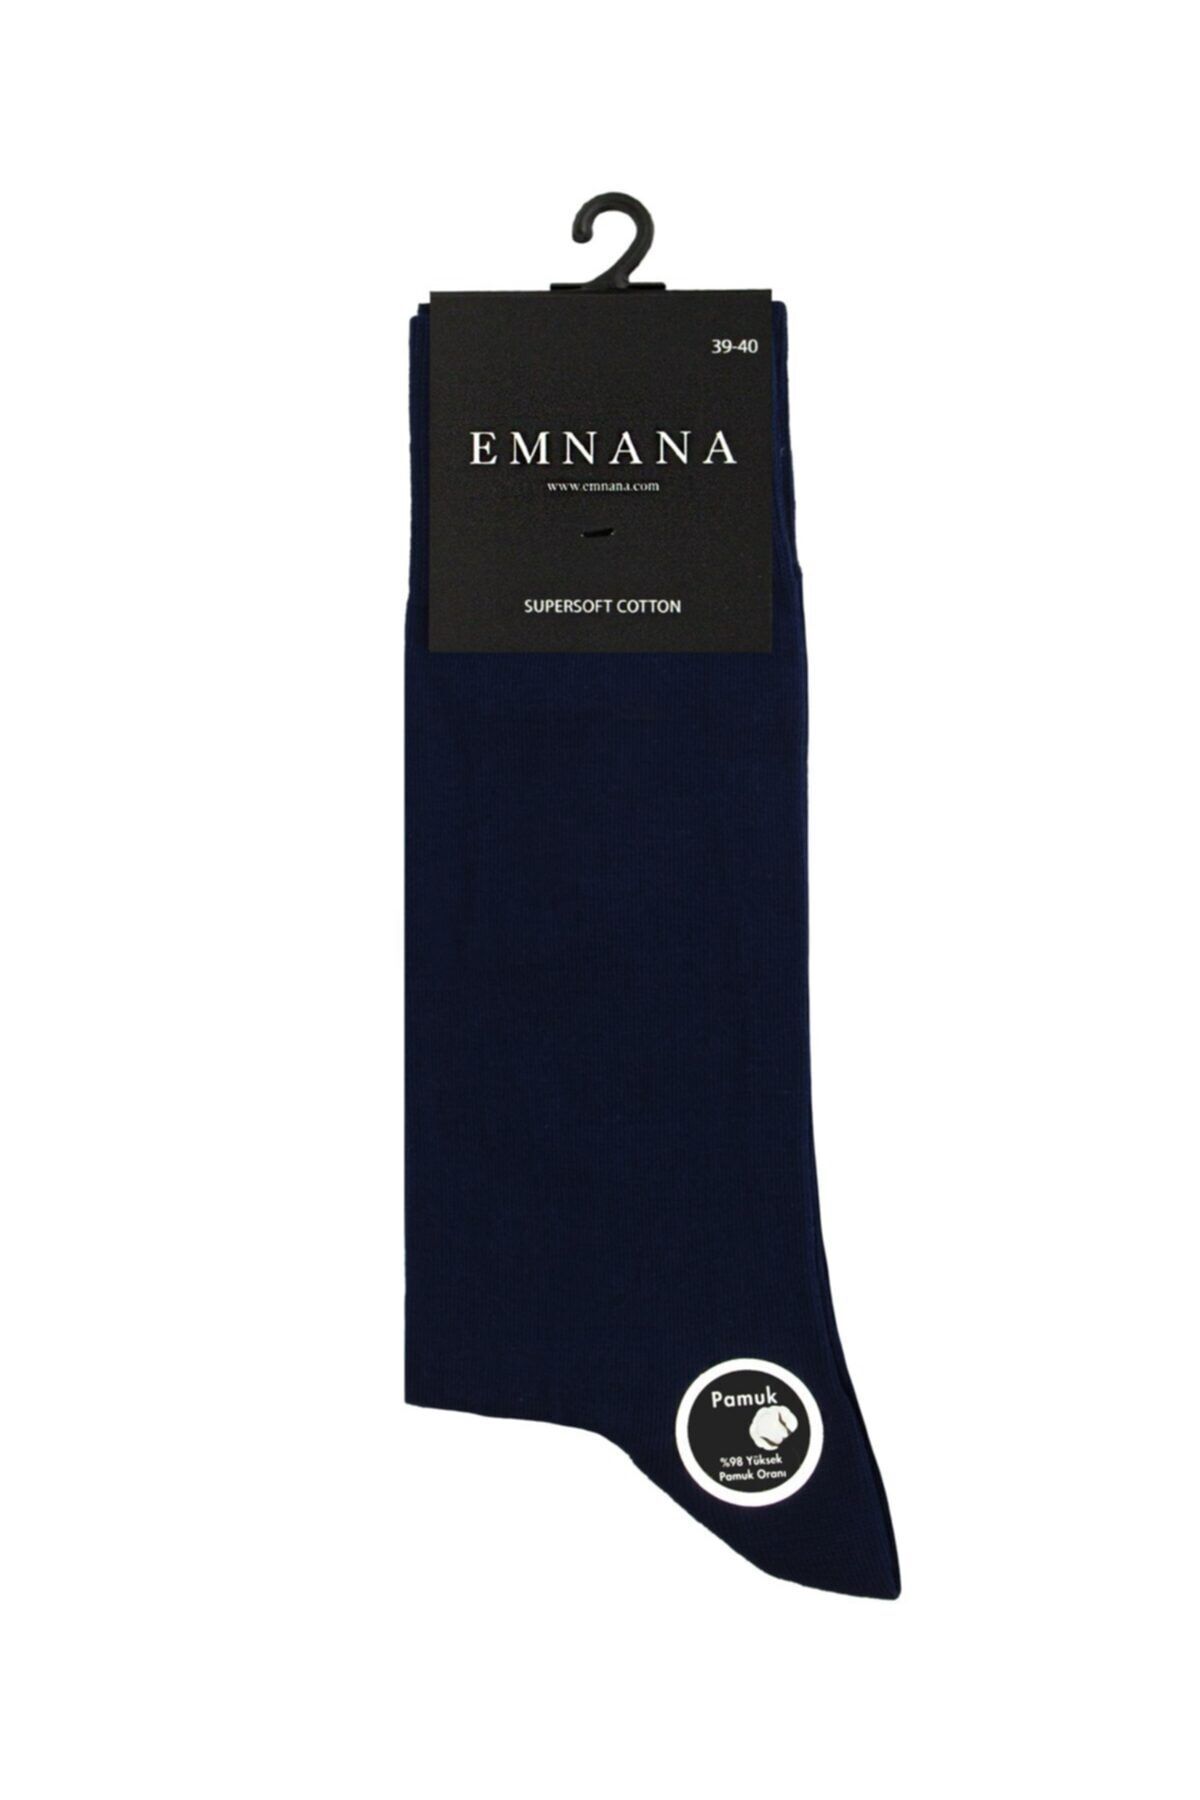 EMNANA 5 Adet Yüksek Pamuk Oranlı Erkek Çorap - Lacivert